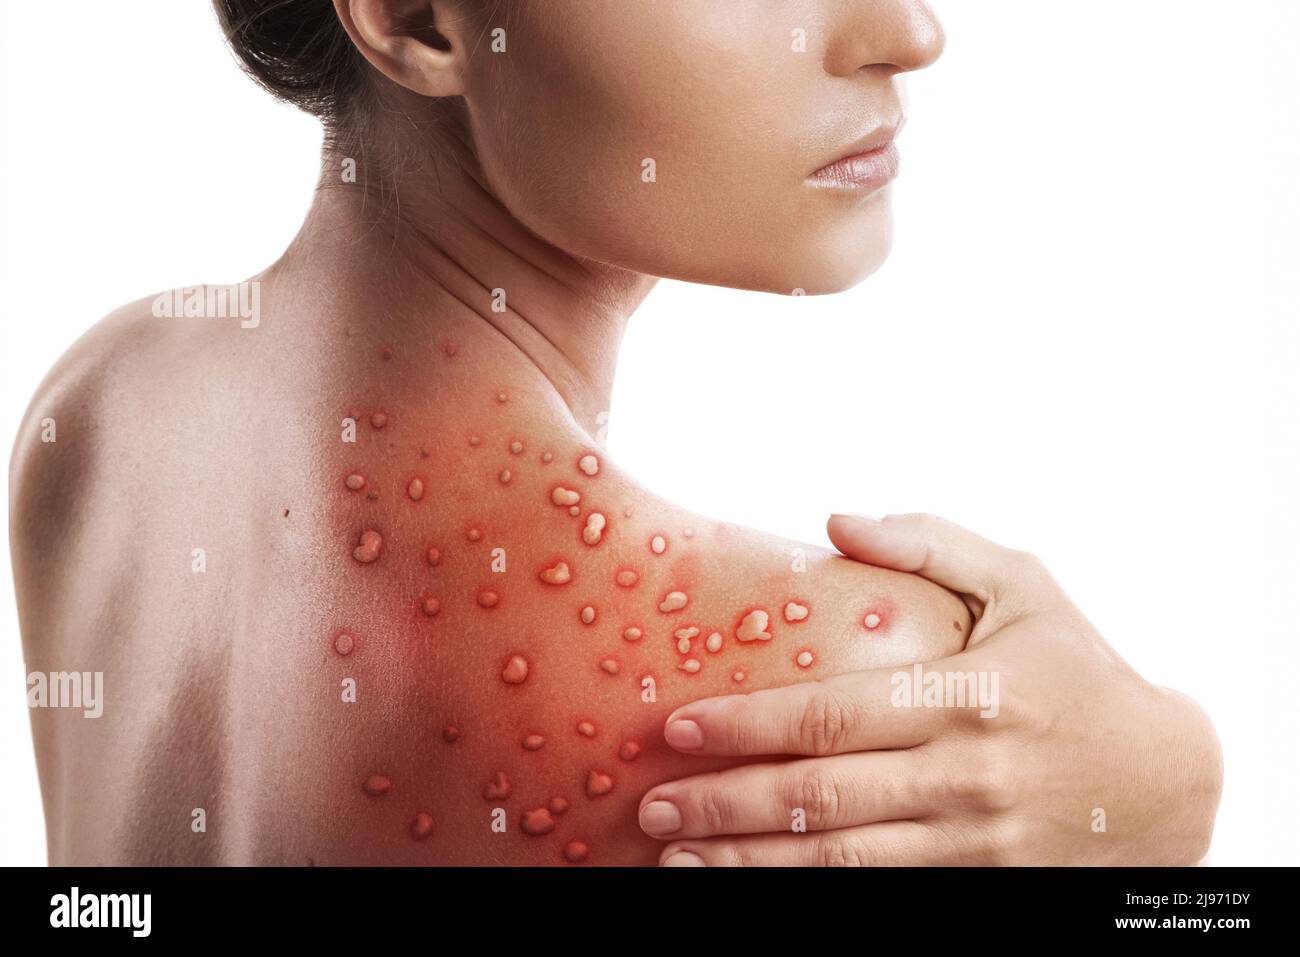 Frau und ihre Haut sind von Blasenausschlag aufgrund von Monkeypox auf weißem Hintergrund betroffen Stockfoto